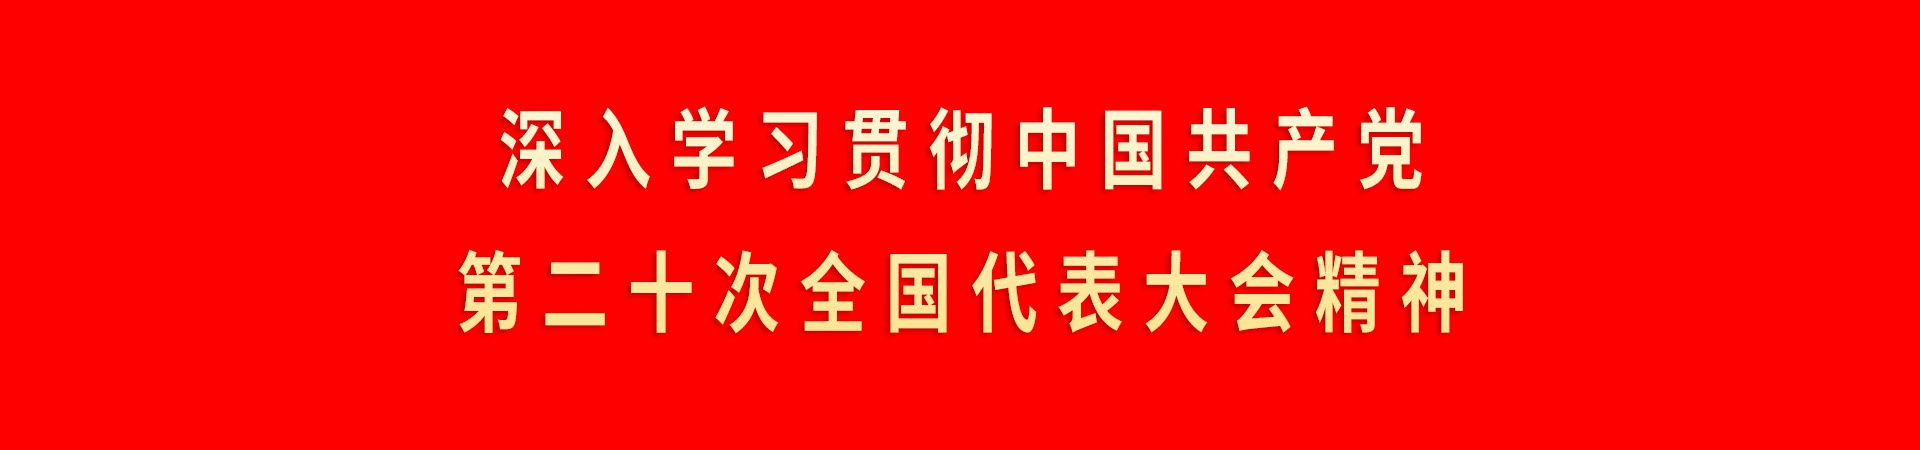 深入学习贯彻中国共产党第二十次全国代表大会精神